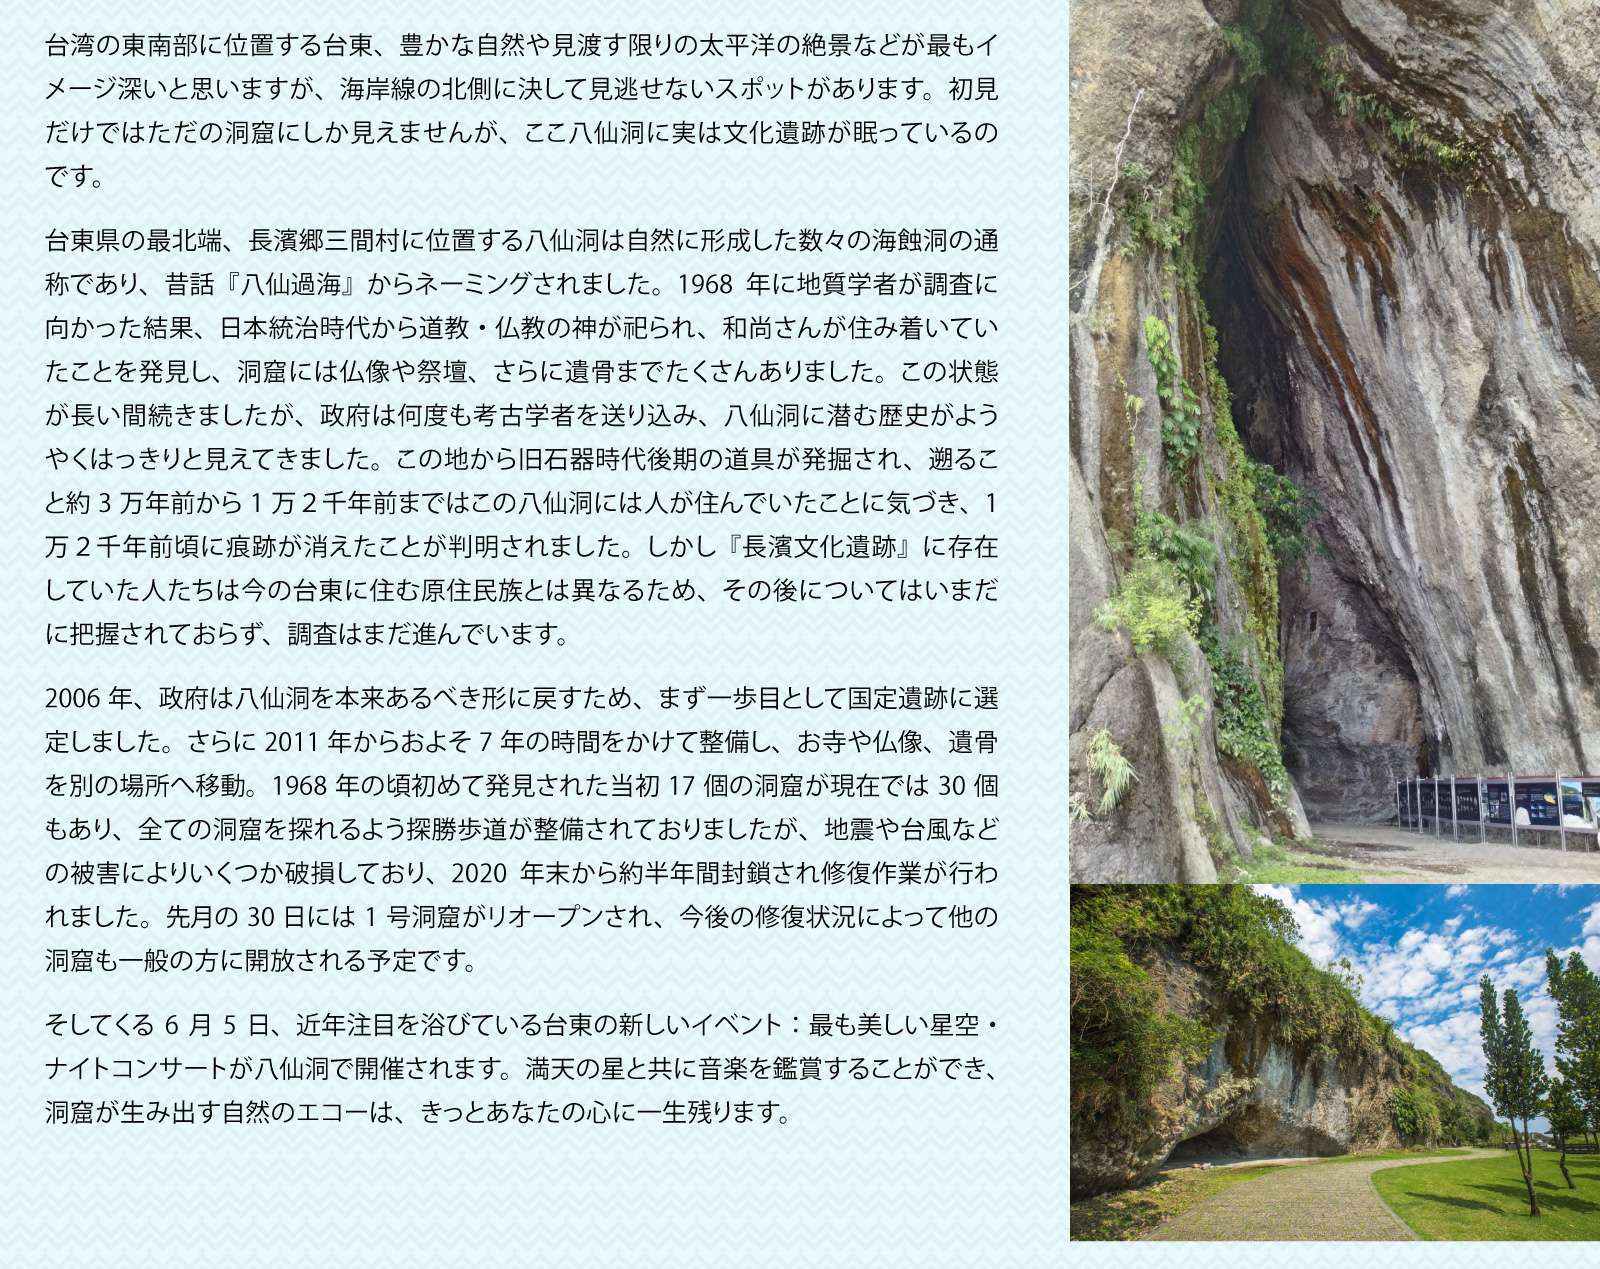 台湾の歴史を垣間見る　八仙洞

台湾の東南部に位置する台東、豊かな自然や見渡す限りの太平洋の絶景などが最もイメージ深いと思いますが、海岸線の北側に決して見逃せないスポットがあります。初見だけではただの洞窟にしか見えませんが、ここ八仙洞に実は文化遺跡が眠っているのです。

台東県の最北端、長濱郷三間村に位置する八仙洞は自然に形成した数々の海蝕洞の通称であり、昔話『八仙過海』からネーミングされました。1968年に地質学者が調査に向かった結果、日本統治時代から道教・仏教の神が祀られ、和尚さんが住み着いていたことを発見し、洞窟には仏像や祭壇、さらに遺骨までたくさんありました。この状態が長い間続きましたが、政府は何度も考古学者を送り込み、八仙洞に潜む歴史がようやくはっきりと見えてきました。この地から旧石器時代後期の道具が発掘され、遡ること約3万年前から1万２千年前まではこの八仙洞には人が住んでいたことに気づき、1万２千年前頃に痕跡が消えたことが判明されました。しかし『長濱文化遺跡』に存在していた人たちは今の台東に住む原住民族とは異なるため、その後についてはいまだに把握されておらず、調査はまだ進んでいます。

2006年、政府は八仙洞を本来あるべき形に戻すため、まず一歩目として国定遺跡に選定しました。さらに2011年からおよそ7年の時間をかけて整備し、お寺や仏像、遺骨を別の場所へ移動。1968年の頃初めて発見された当初17個の洞窟が現在では30個もあり、全ての洞窟を探れるよう探勝歩道が整備されておりましたが、地震や台風などの被害によりいくつか破損しており、2020年末から約半年間封鎖され修復作業が行われました。先月の30日には1号洞窟がリオープンされ、今後の修復状況によって他の洞窟も一般の方に開放される予定です。

そしてくる6月5日、近年注目を浴びている台東の新しいイベント：最も美しい星空・ナイトコンサートが八仙洞で開催されます。満天の星と共に音楽を鑑賞することができ、洞窟が生み出す自然のエコーは、きっとあなたの心に一生残ります。
